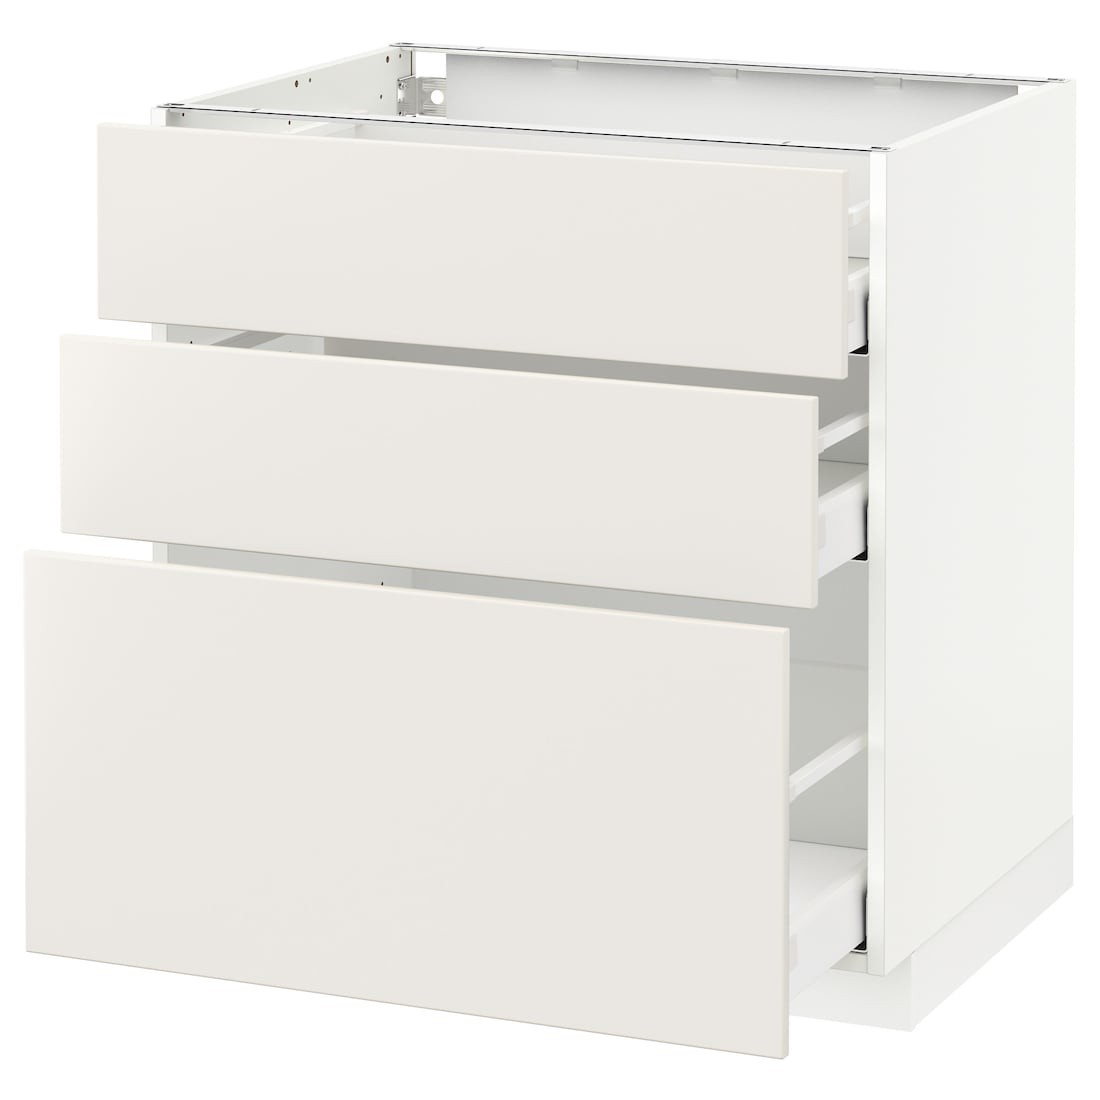 IKEA METOD МЕТОД / MAXIMERA МАКСИМЕРА Напольный шкаф с 3 ящиками, белый / Veddinge белый, 80x60 см 29049708 290.497.08